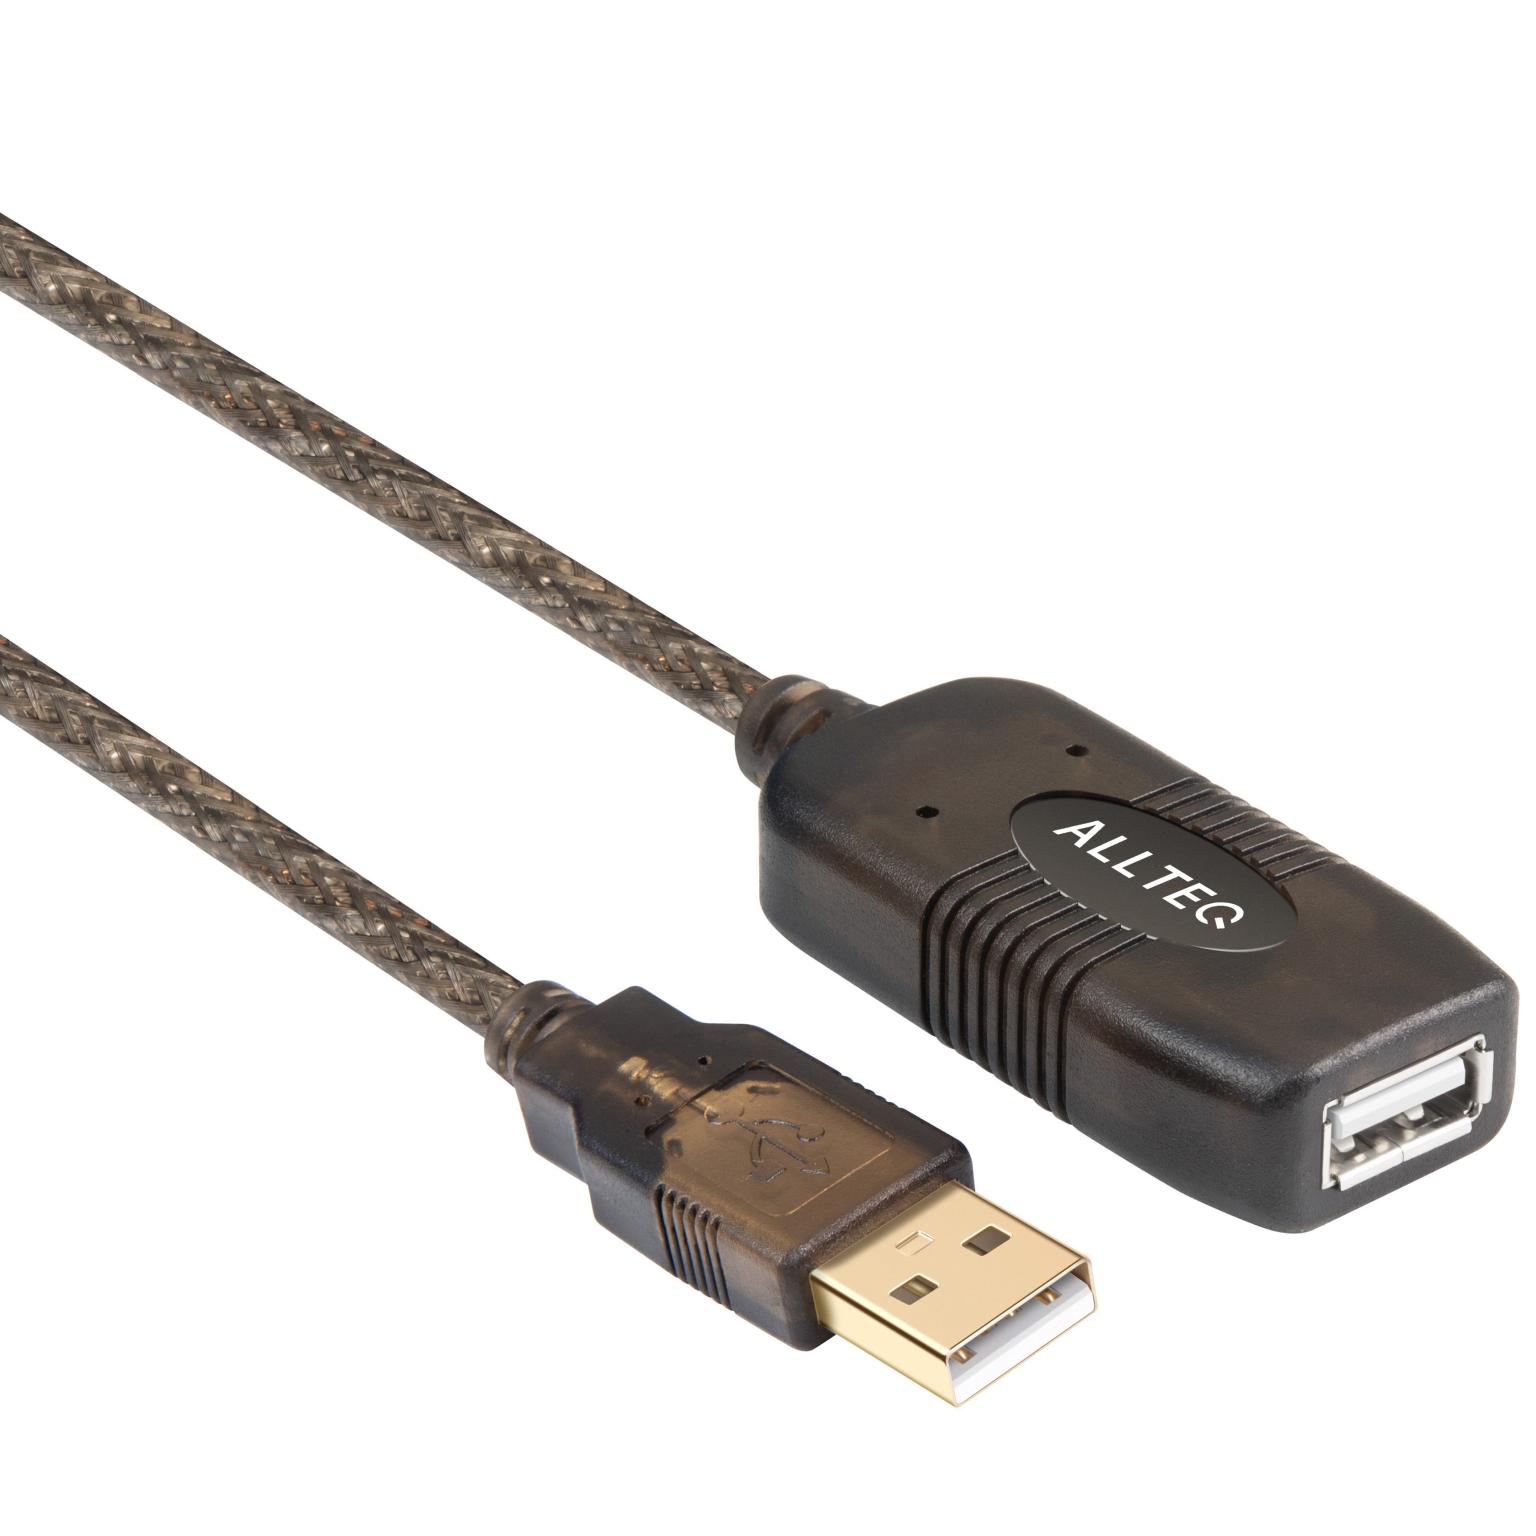 USB-Verlängerungskabel mit Verstärker - Allteq